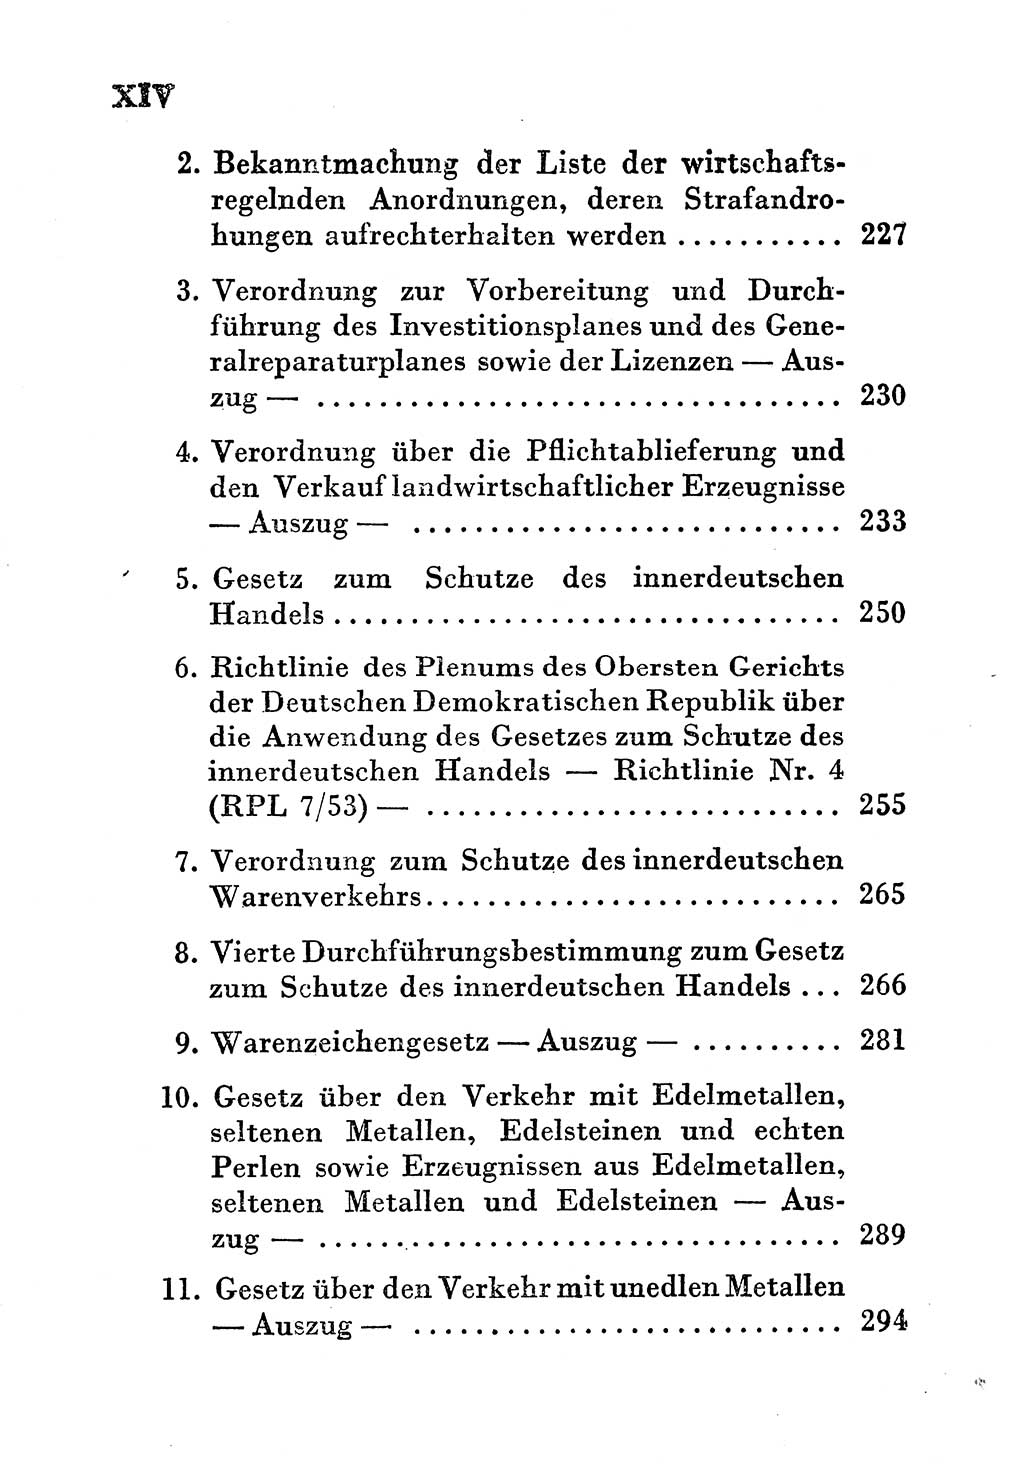 Einleitung Strafgesetzbuch (StGB) und andere Strafgesetze [Deutsche Demokratische Republik (DDR)] 1956, Seite 14 (Einl. StGB Strafges. DDR 1956, S. 14)